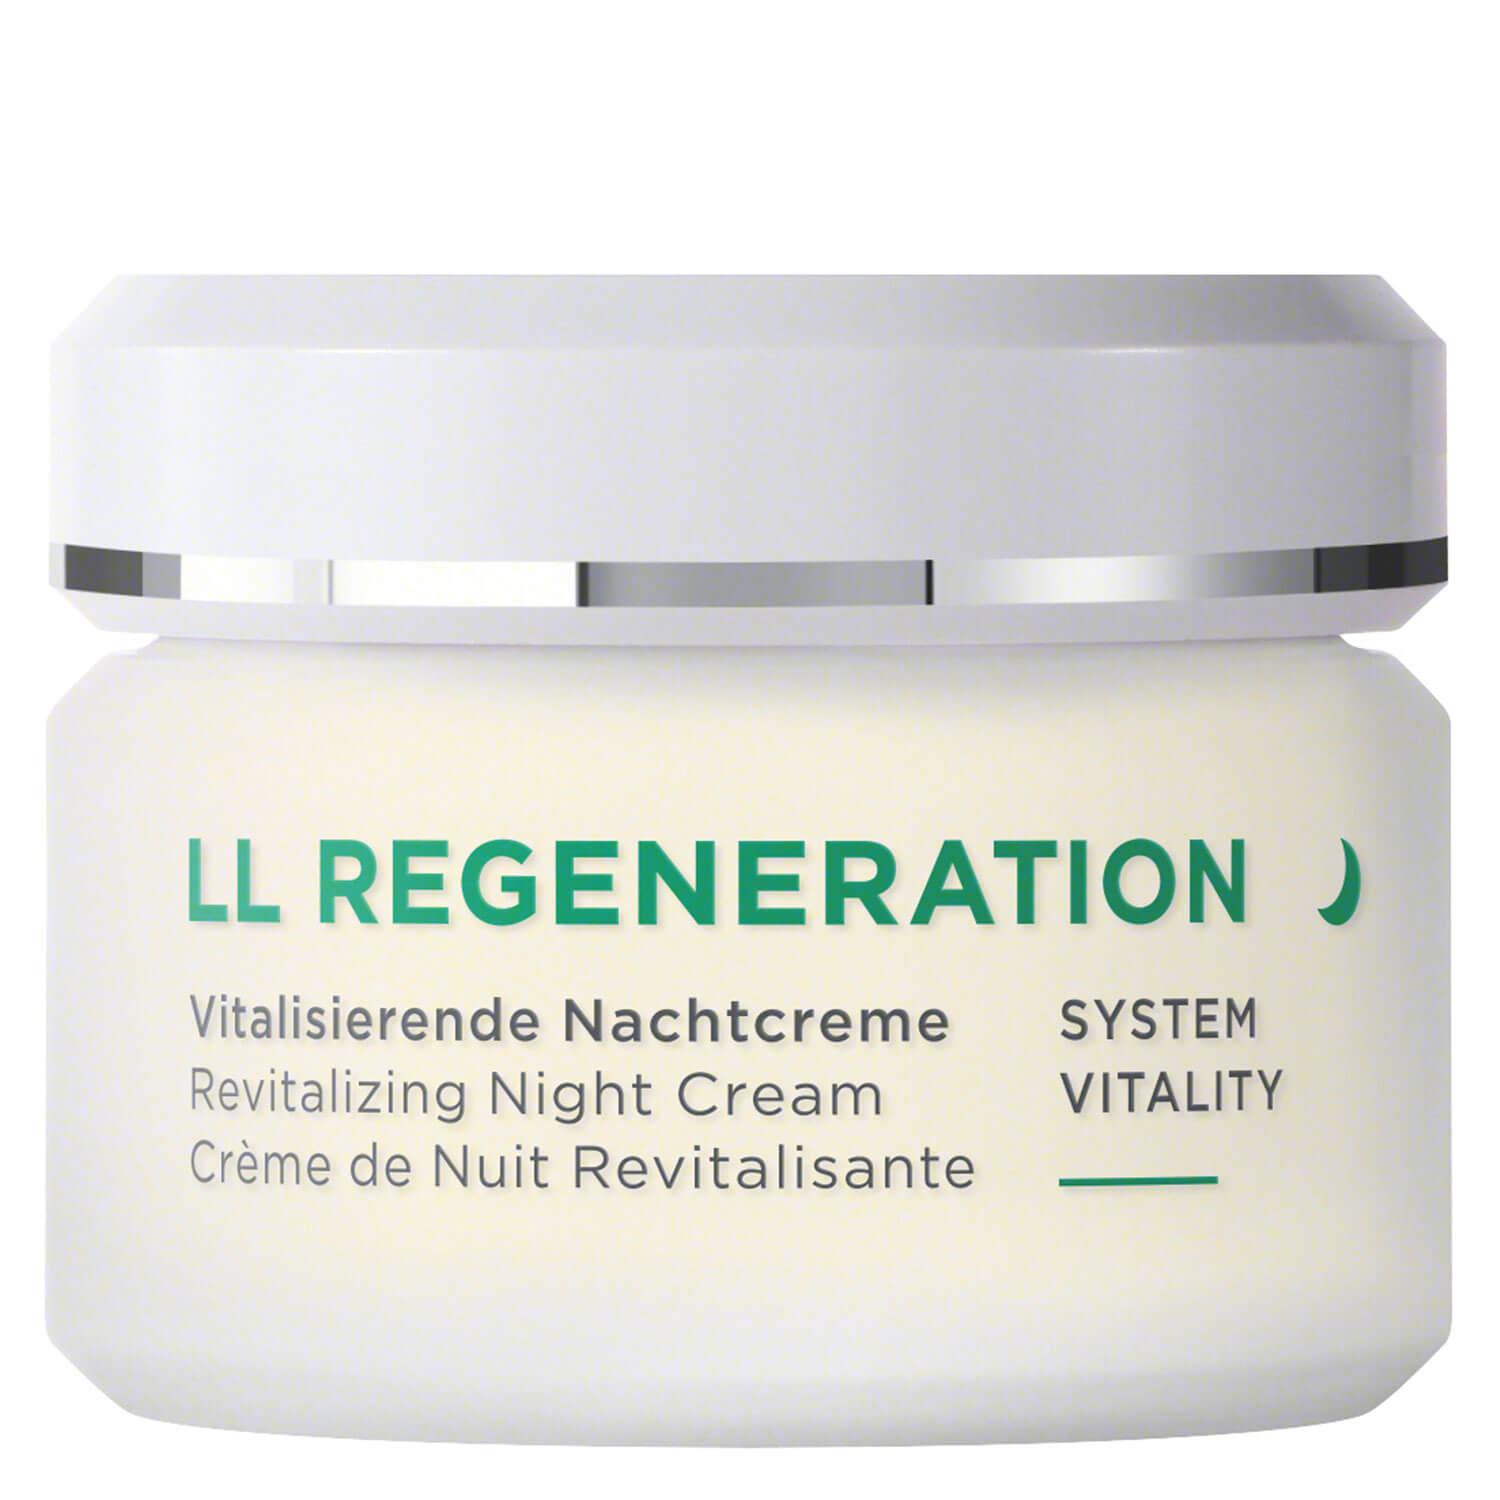 LL Regeneration - Vitalisierende Nachtcreme